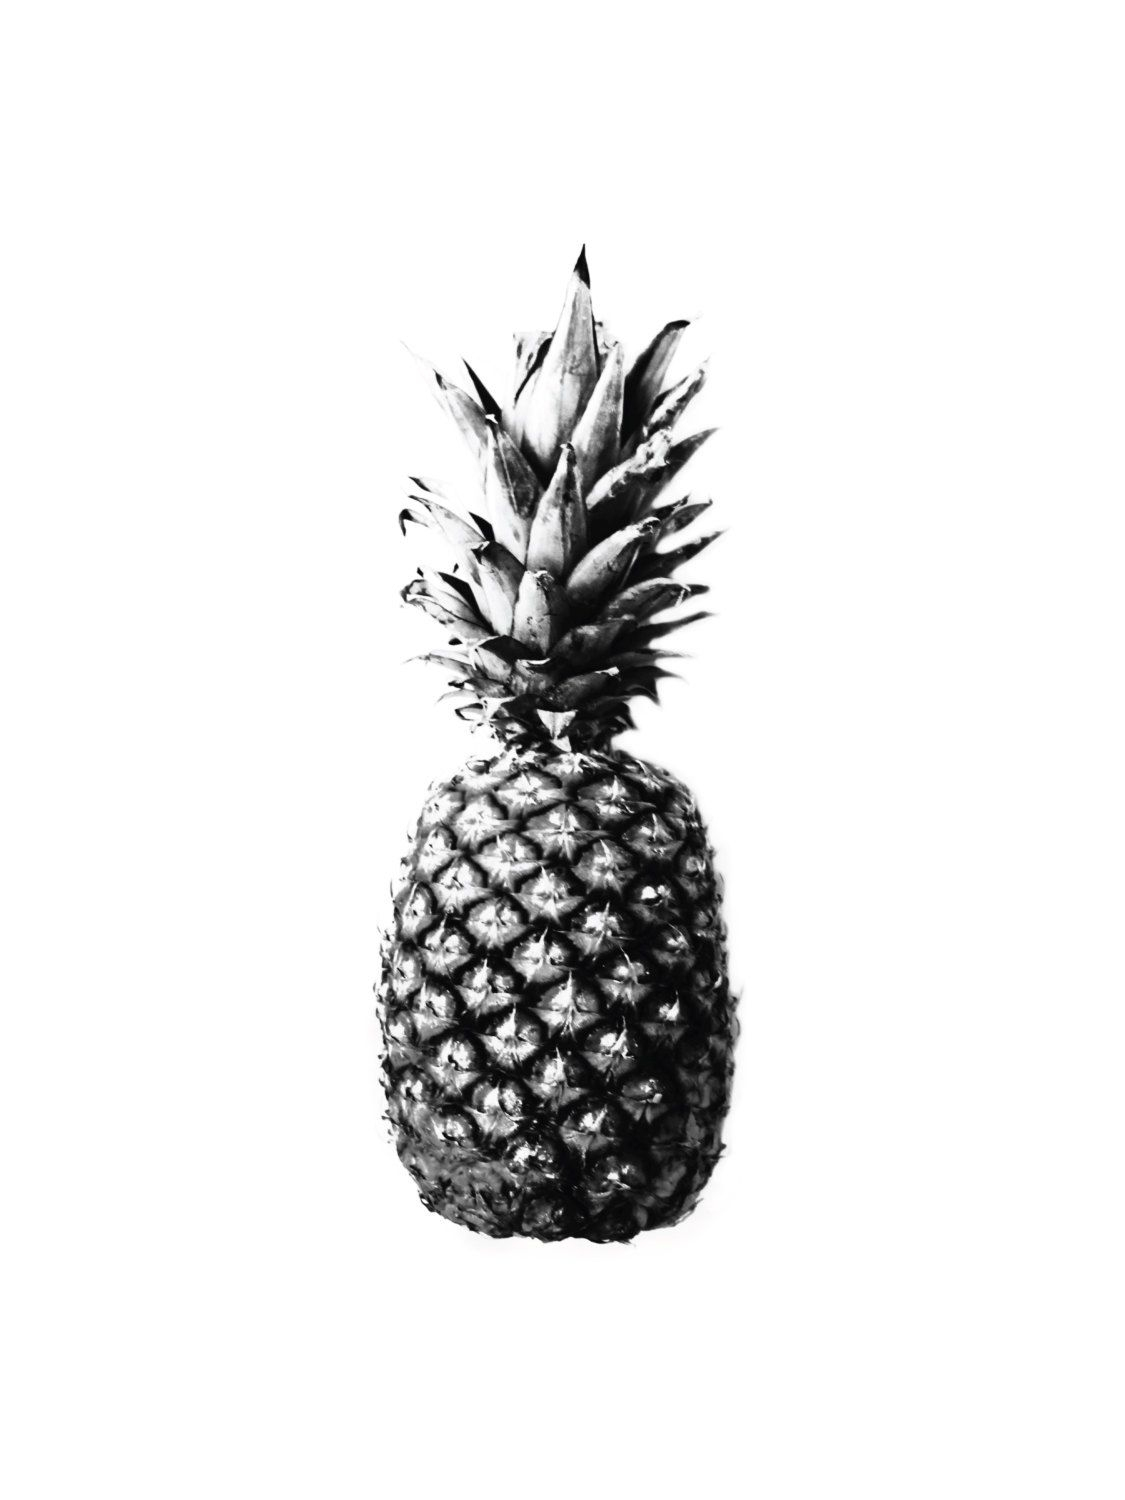 Cet Article N'Est Pas Disponible  Etsy  Pineapple concernant Ananas Dessin